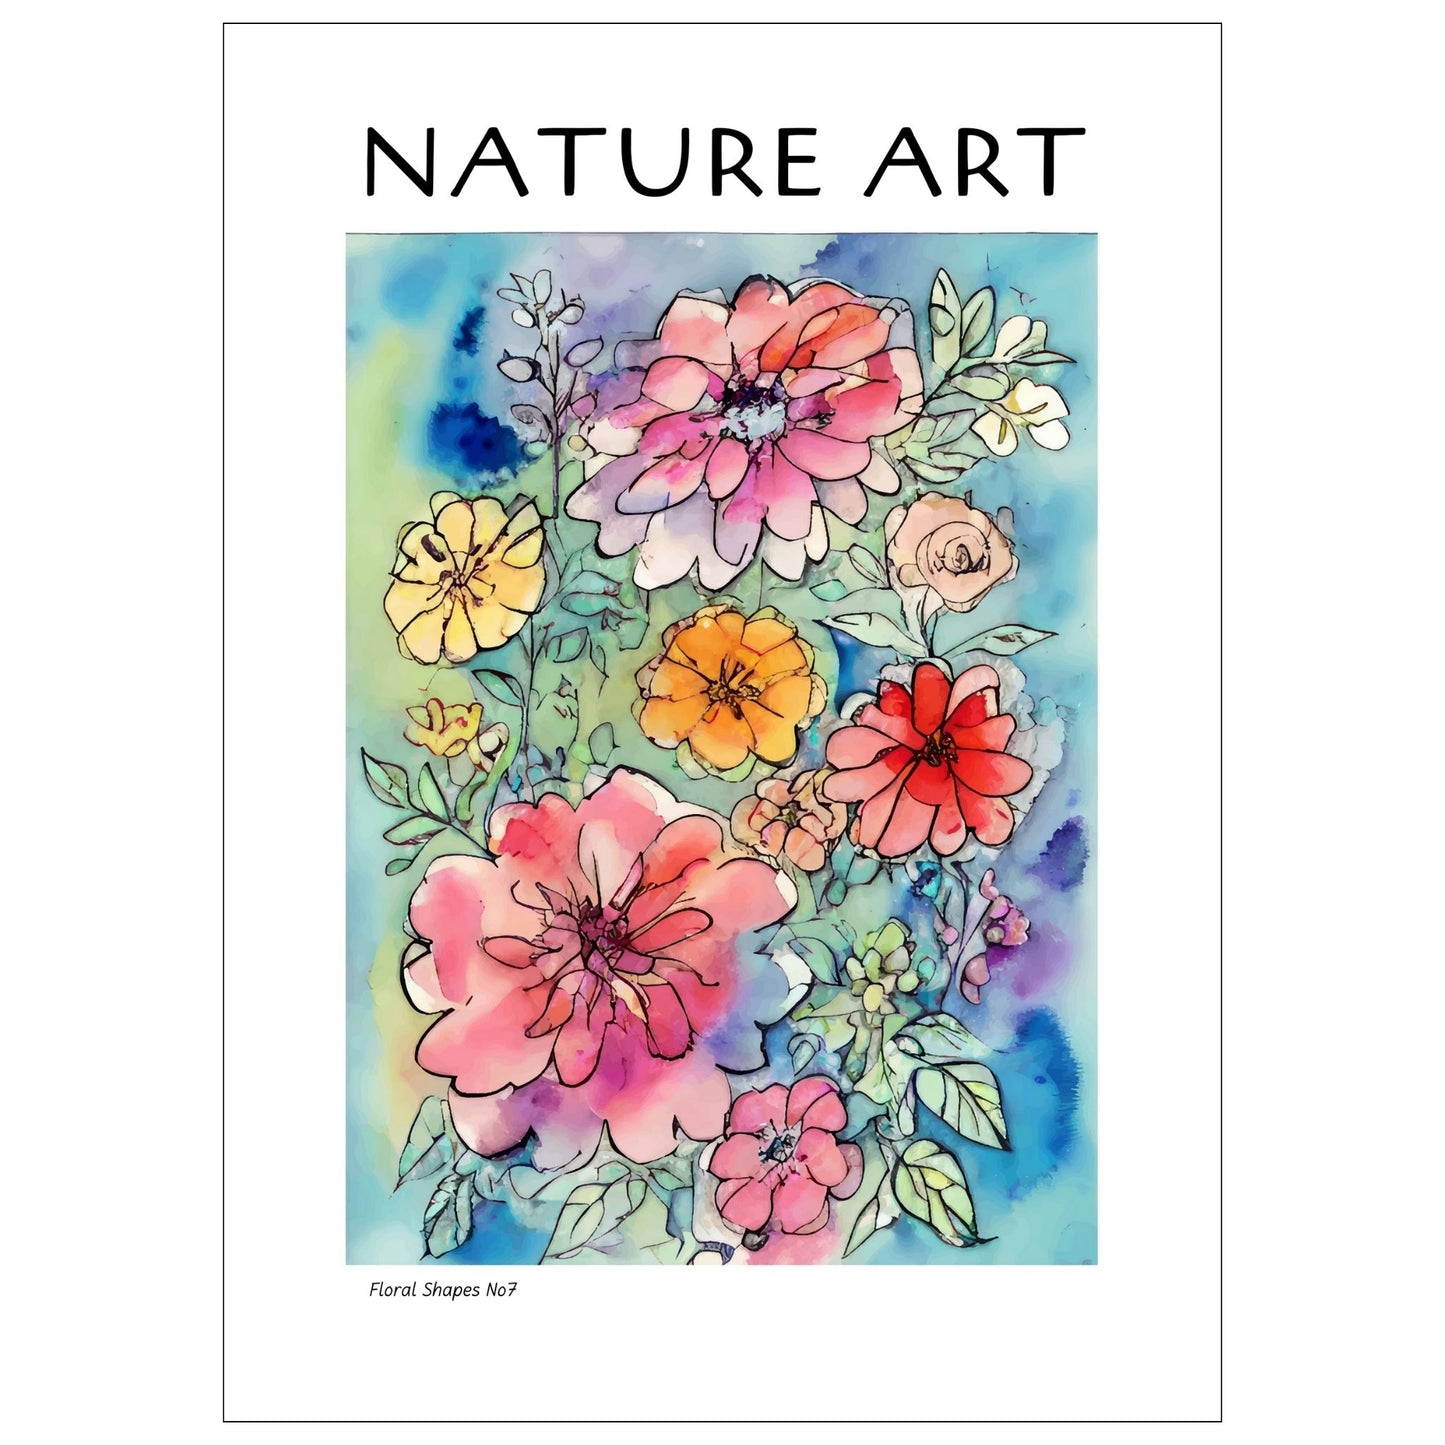 grafisk akvarell med abstrakte og fargerike blomstermotiver.